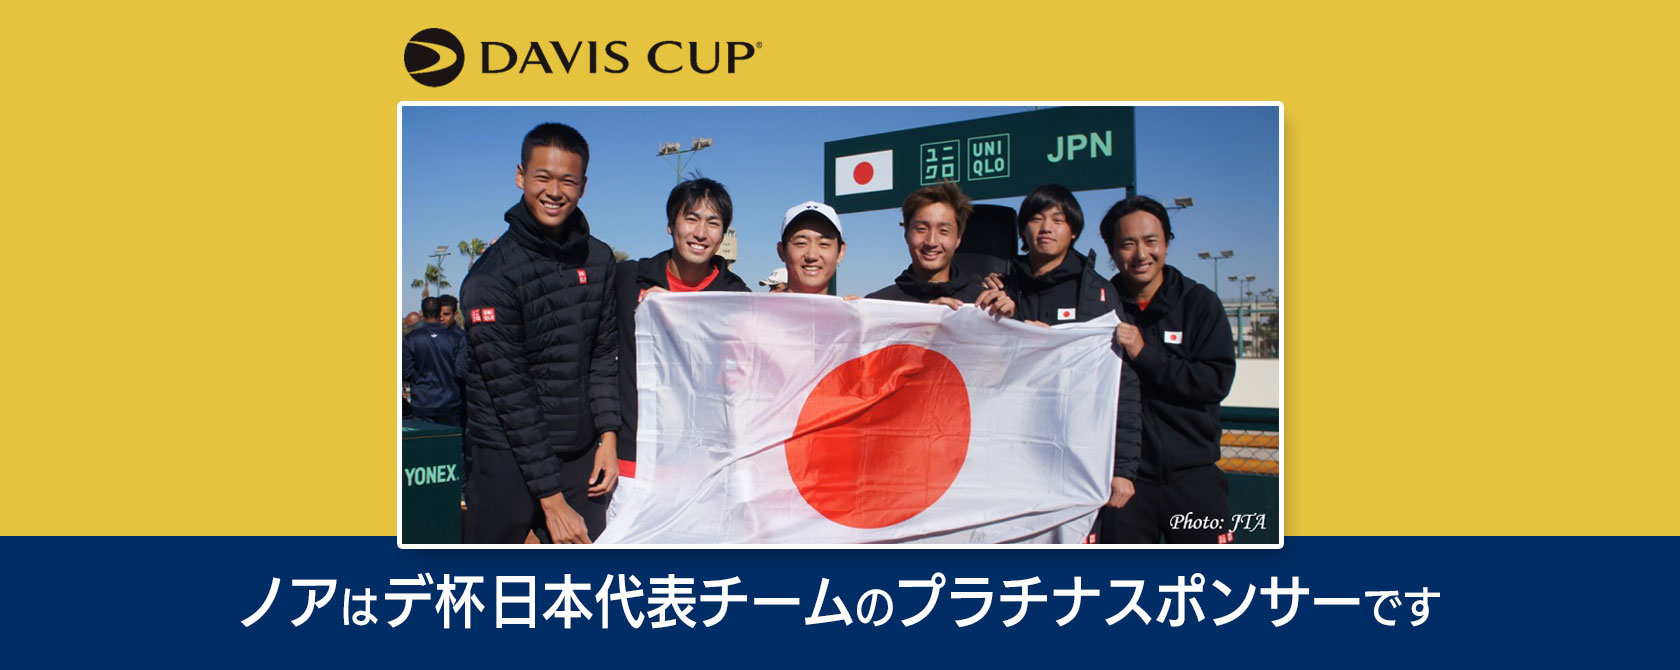 ノアはDavis Cup日本代表チームのプラチナスポンサーです